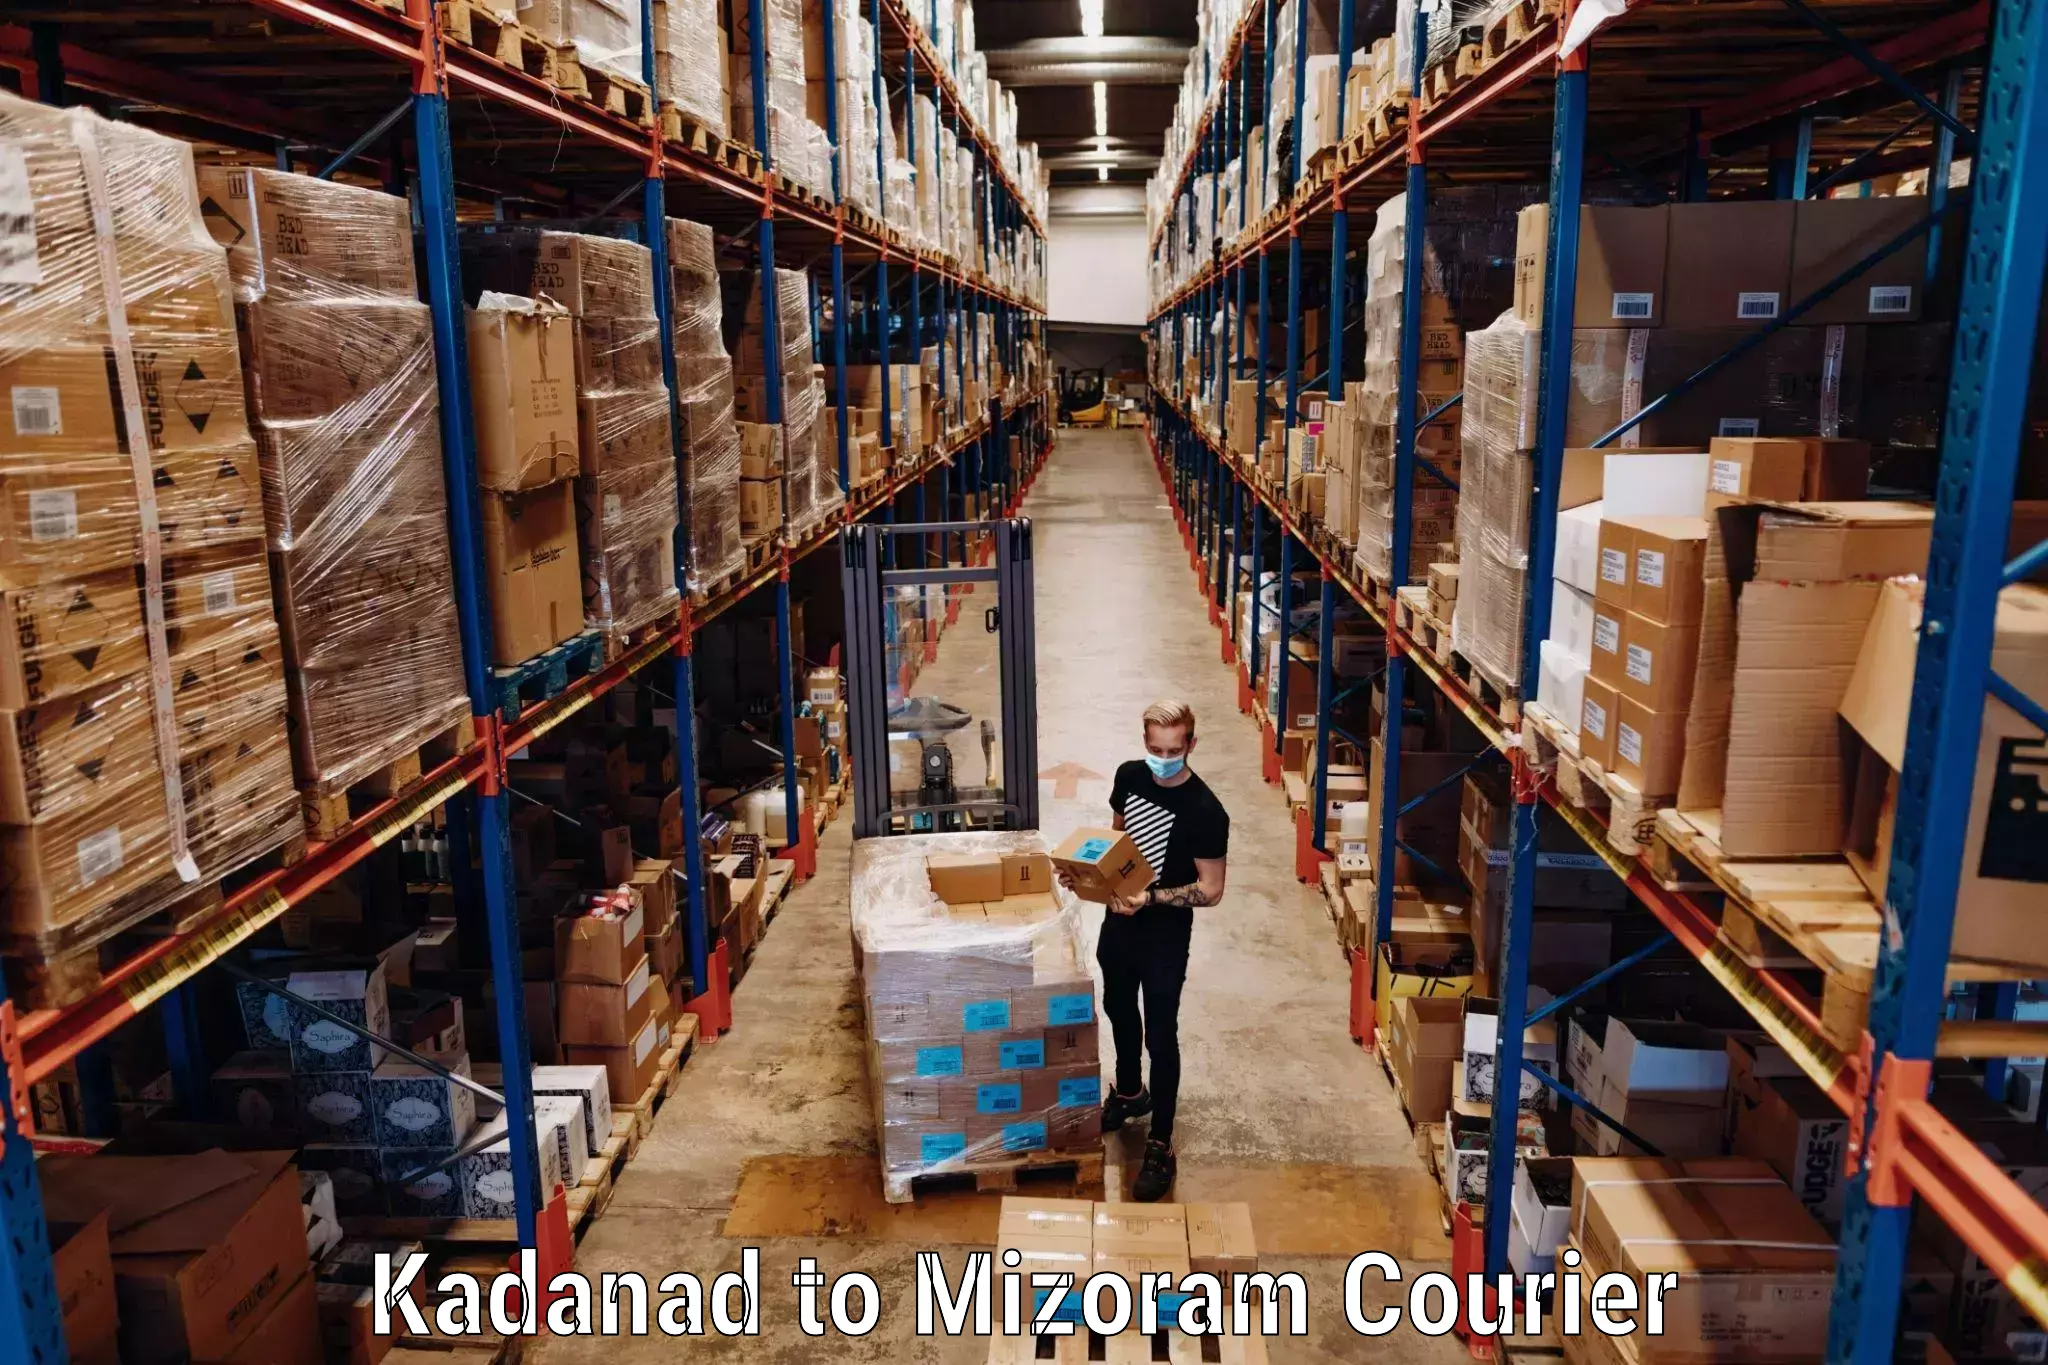 Reliable luggage courier Kadanad to Mizoram